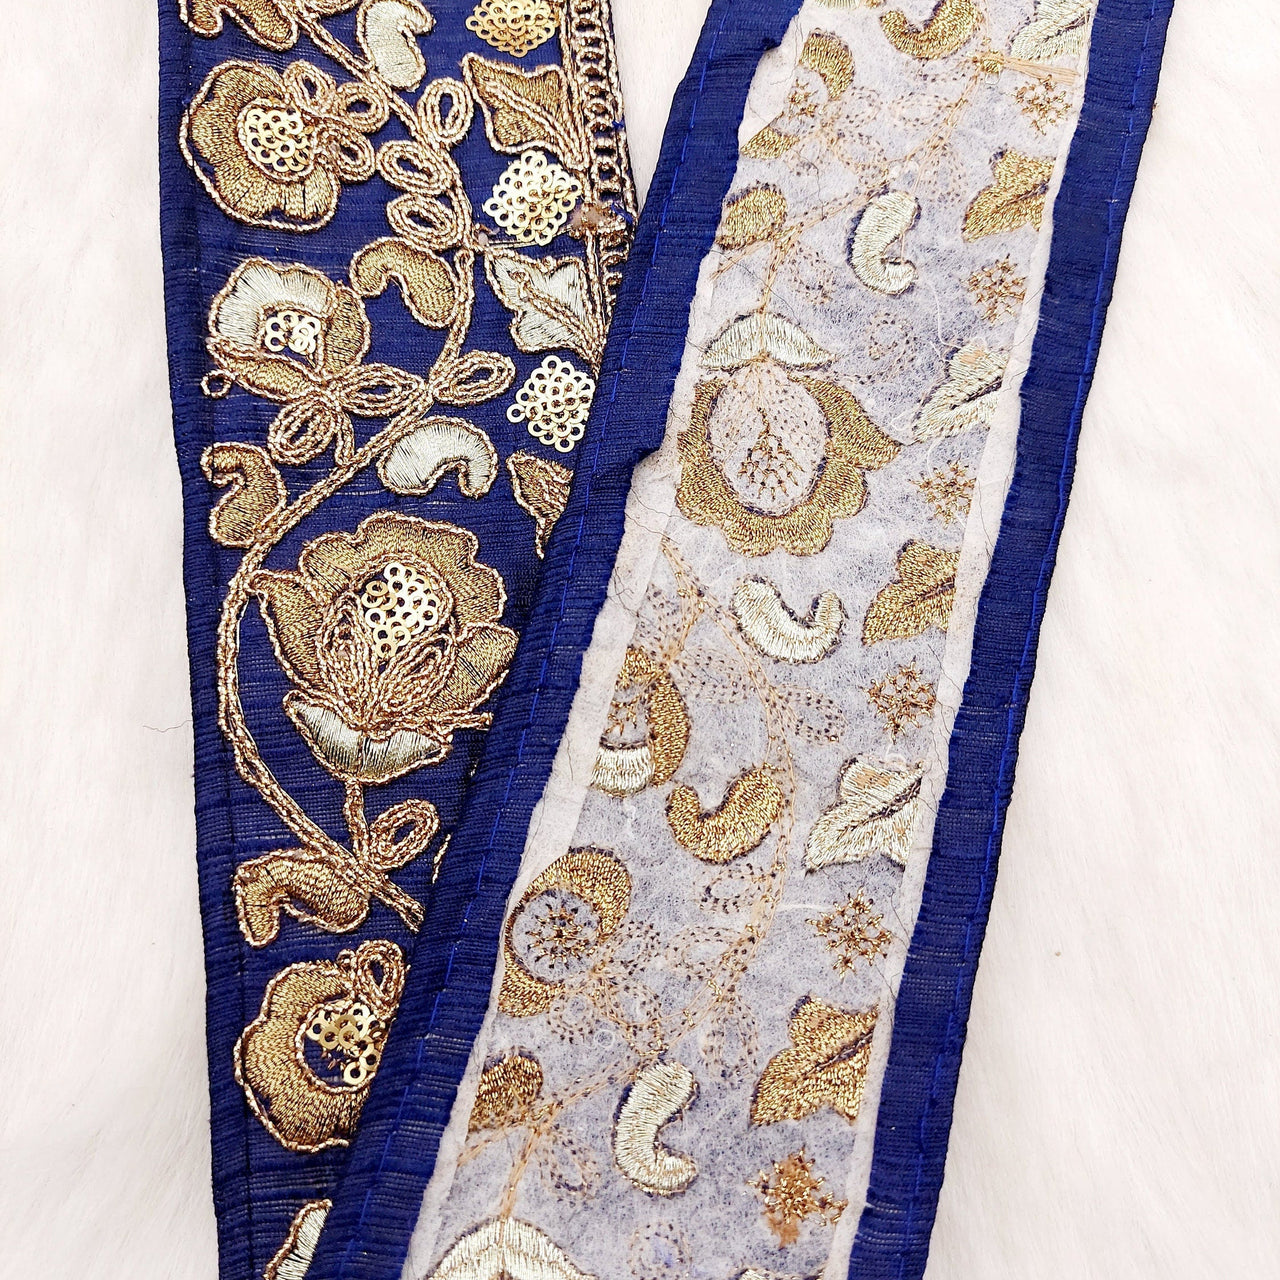 Silk Trim Gold Floral Embroidered Sequins Trim, Decorative Trim, Indian Sari Border